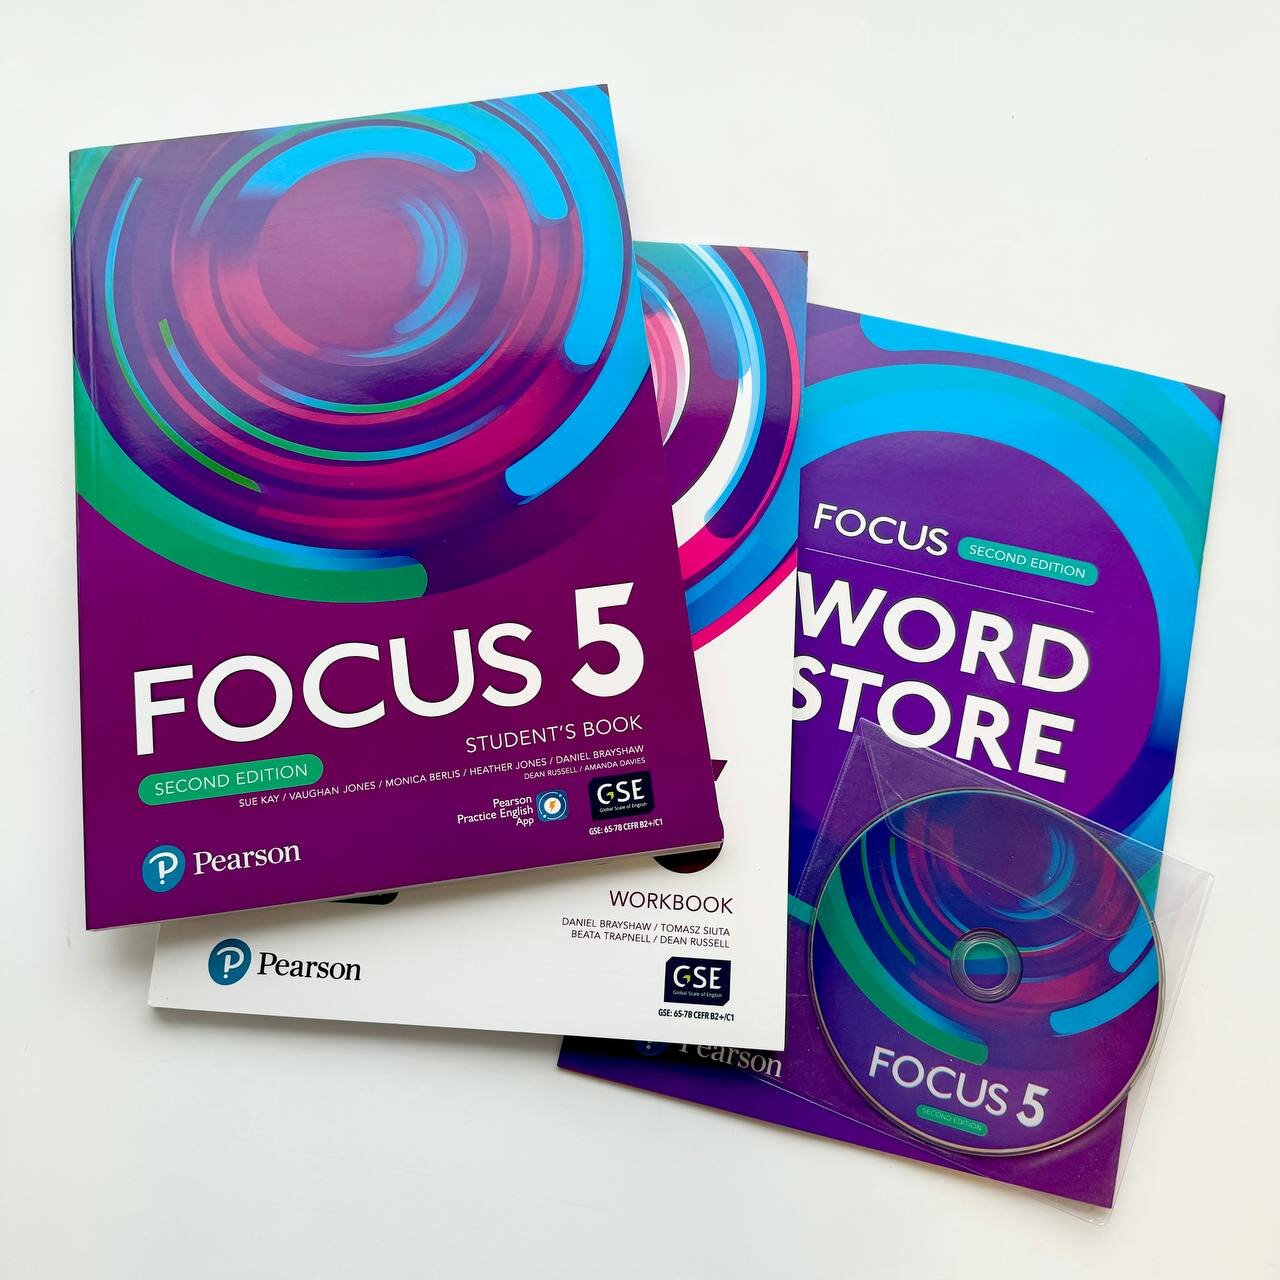 Focus 5, Student’s Book (Учебник) + Workbook (Рабочая тетрадь) + Word Store + CD — полный комплект